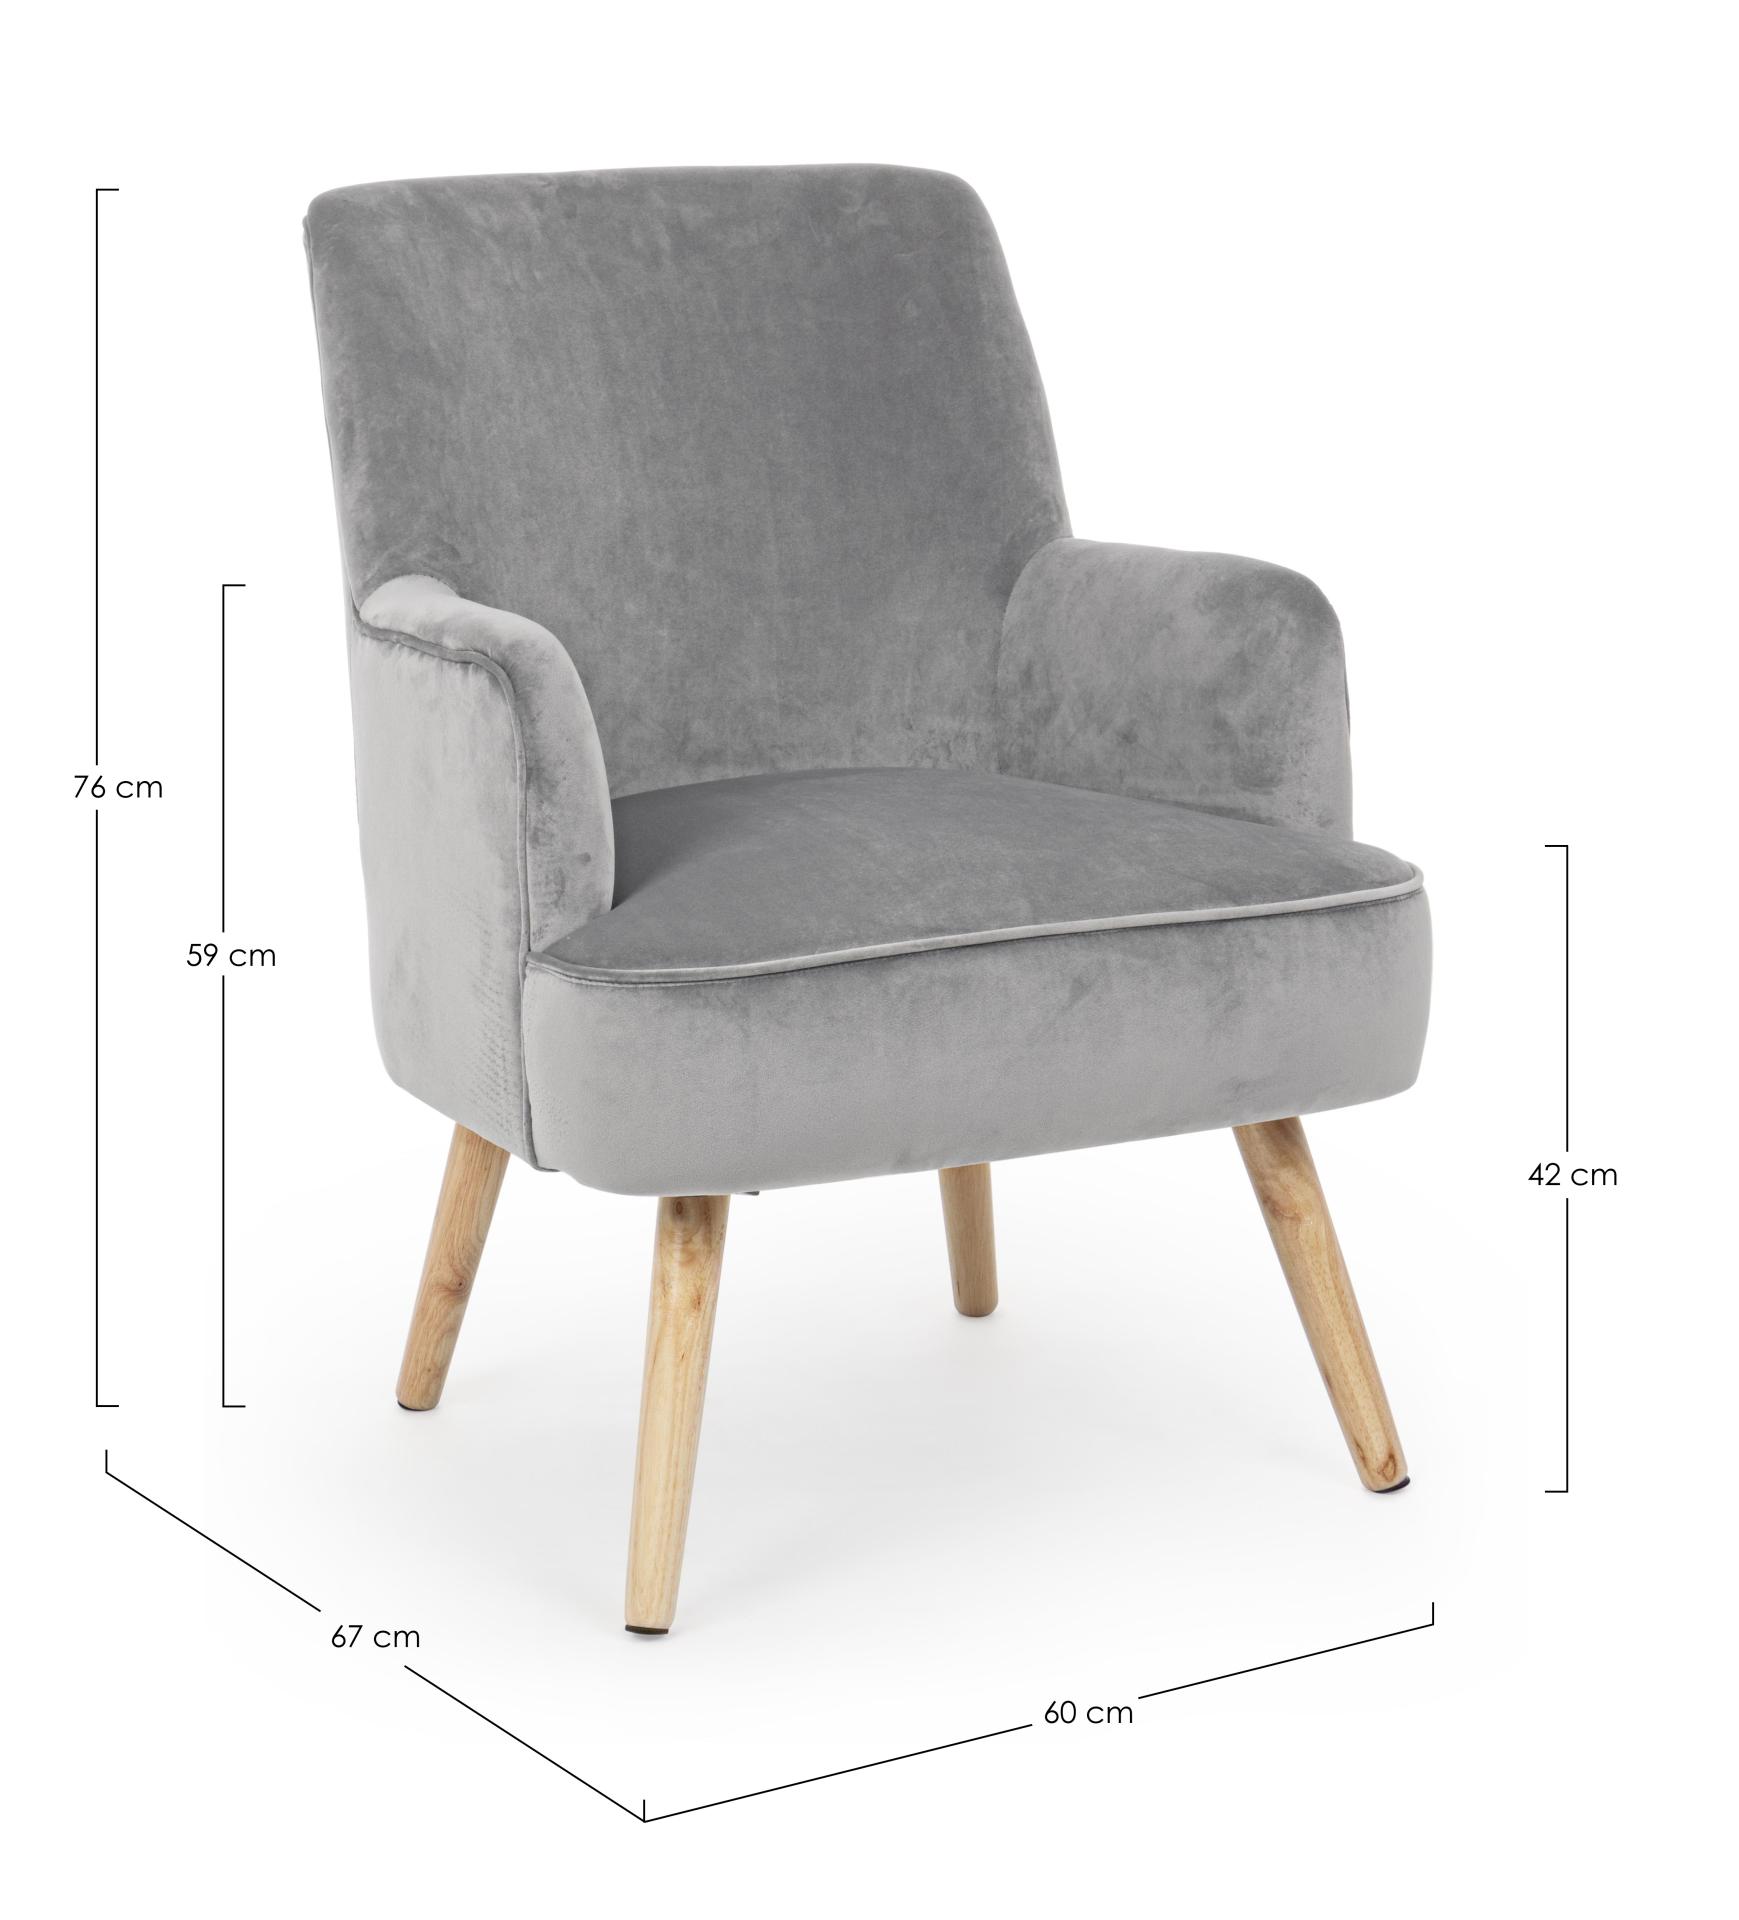 Der Sessel Adeline überzeugt mit seinem klassischen Design. Gefertigt wurde er aus Stoff in Samt-Optik, welcher einen grauen Farbton besitzt. Das Gestell ist aus Buchenholz und hat eine natürliche Farbe. Der Sessel besitzt eine Sitzhöhe von 42 cm. Die Bre